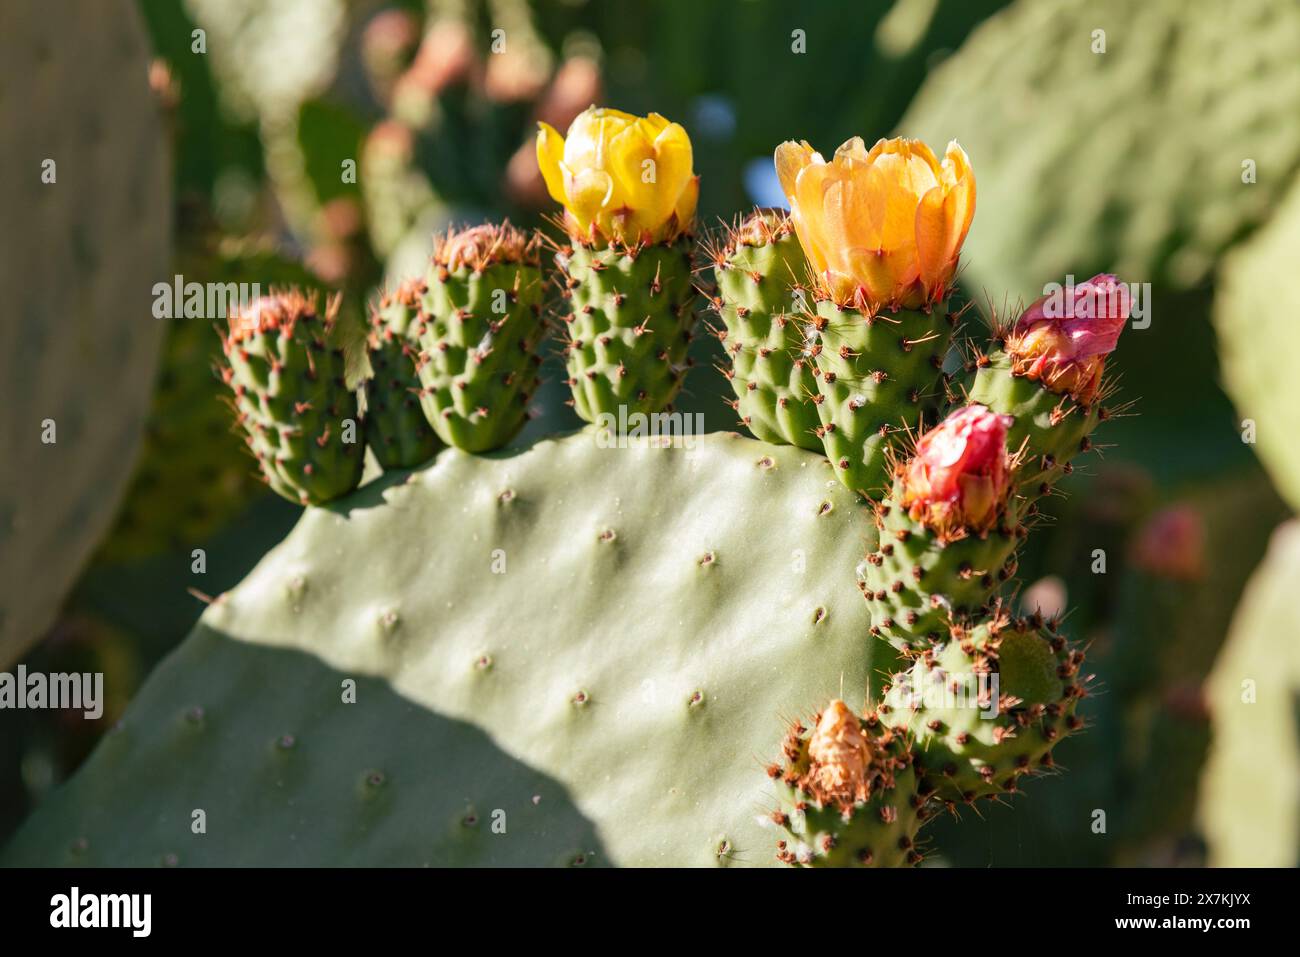 Detalle de una chumbera, opuntia ficus, a finales de primavera con flores y frutos Stock Photo